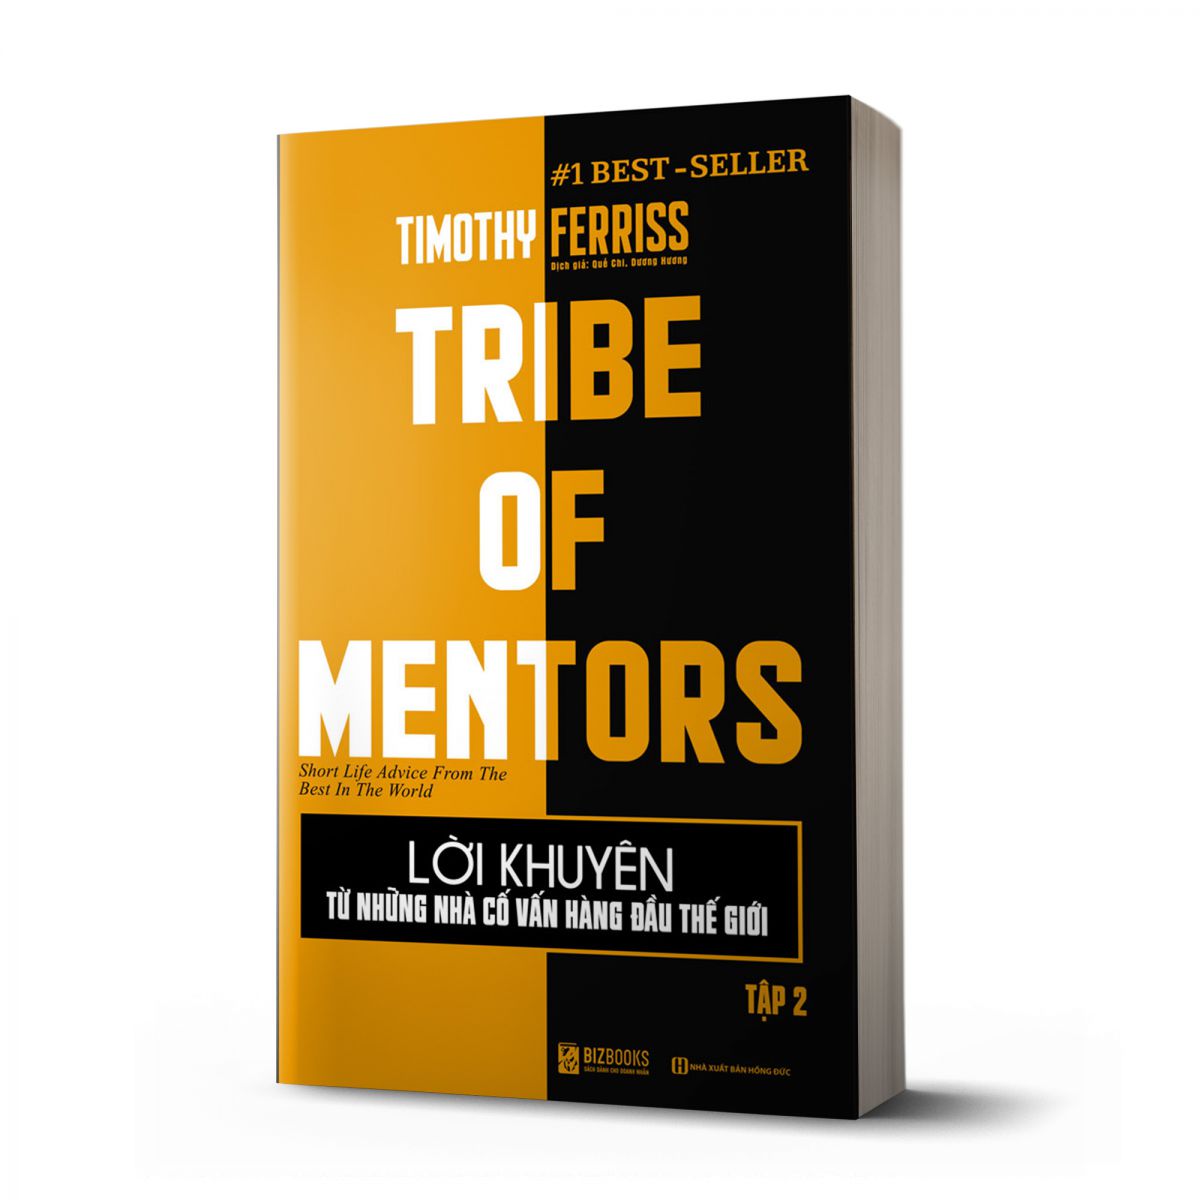 Lời khuyên từ những nhà cố vấn hàng đầu thế giới – Tribe of mentor (Tập 2) 1 